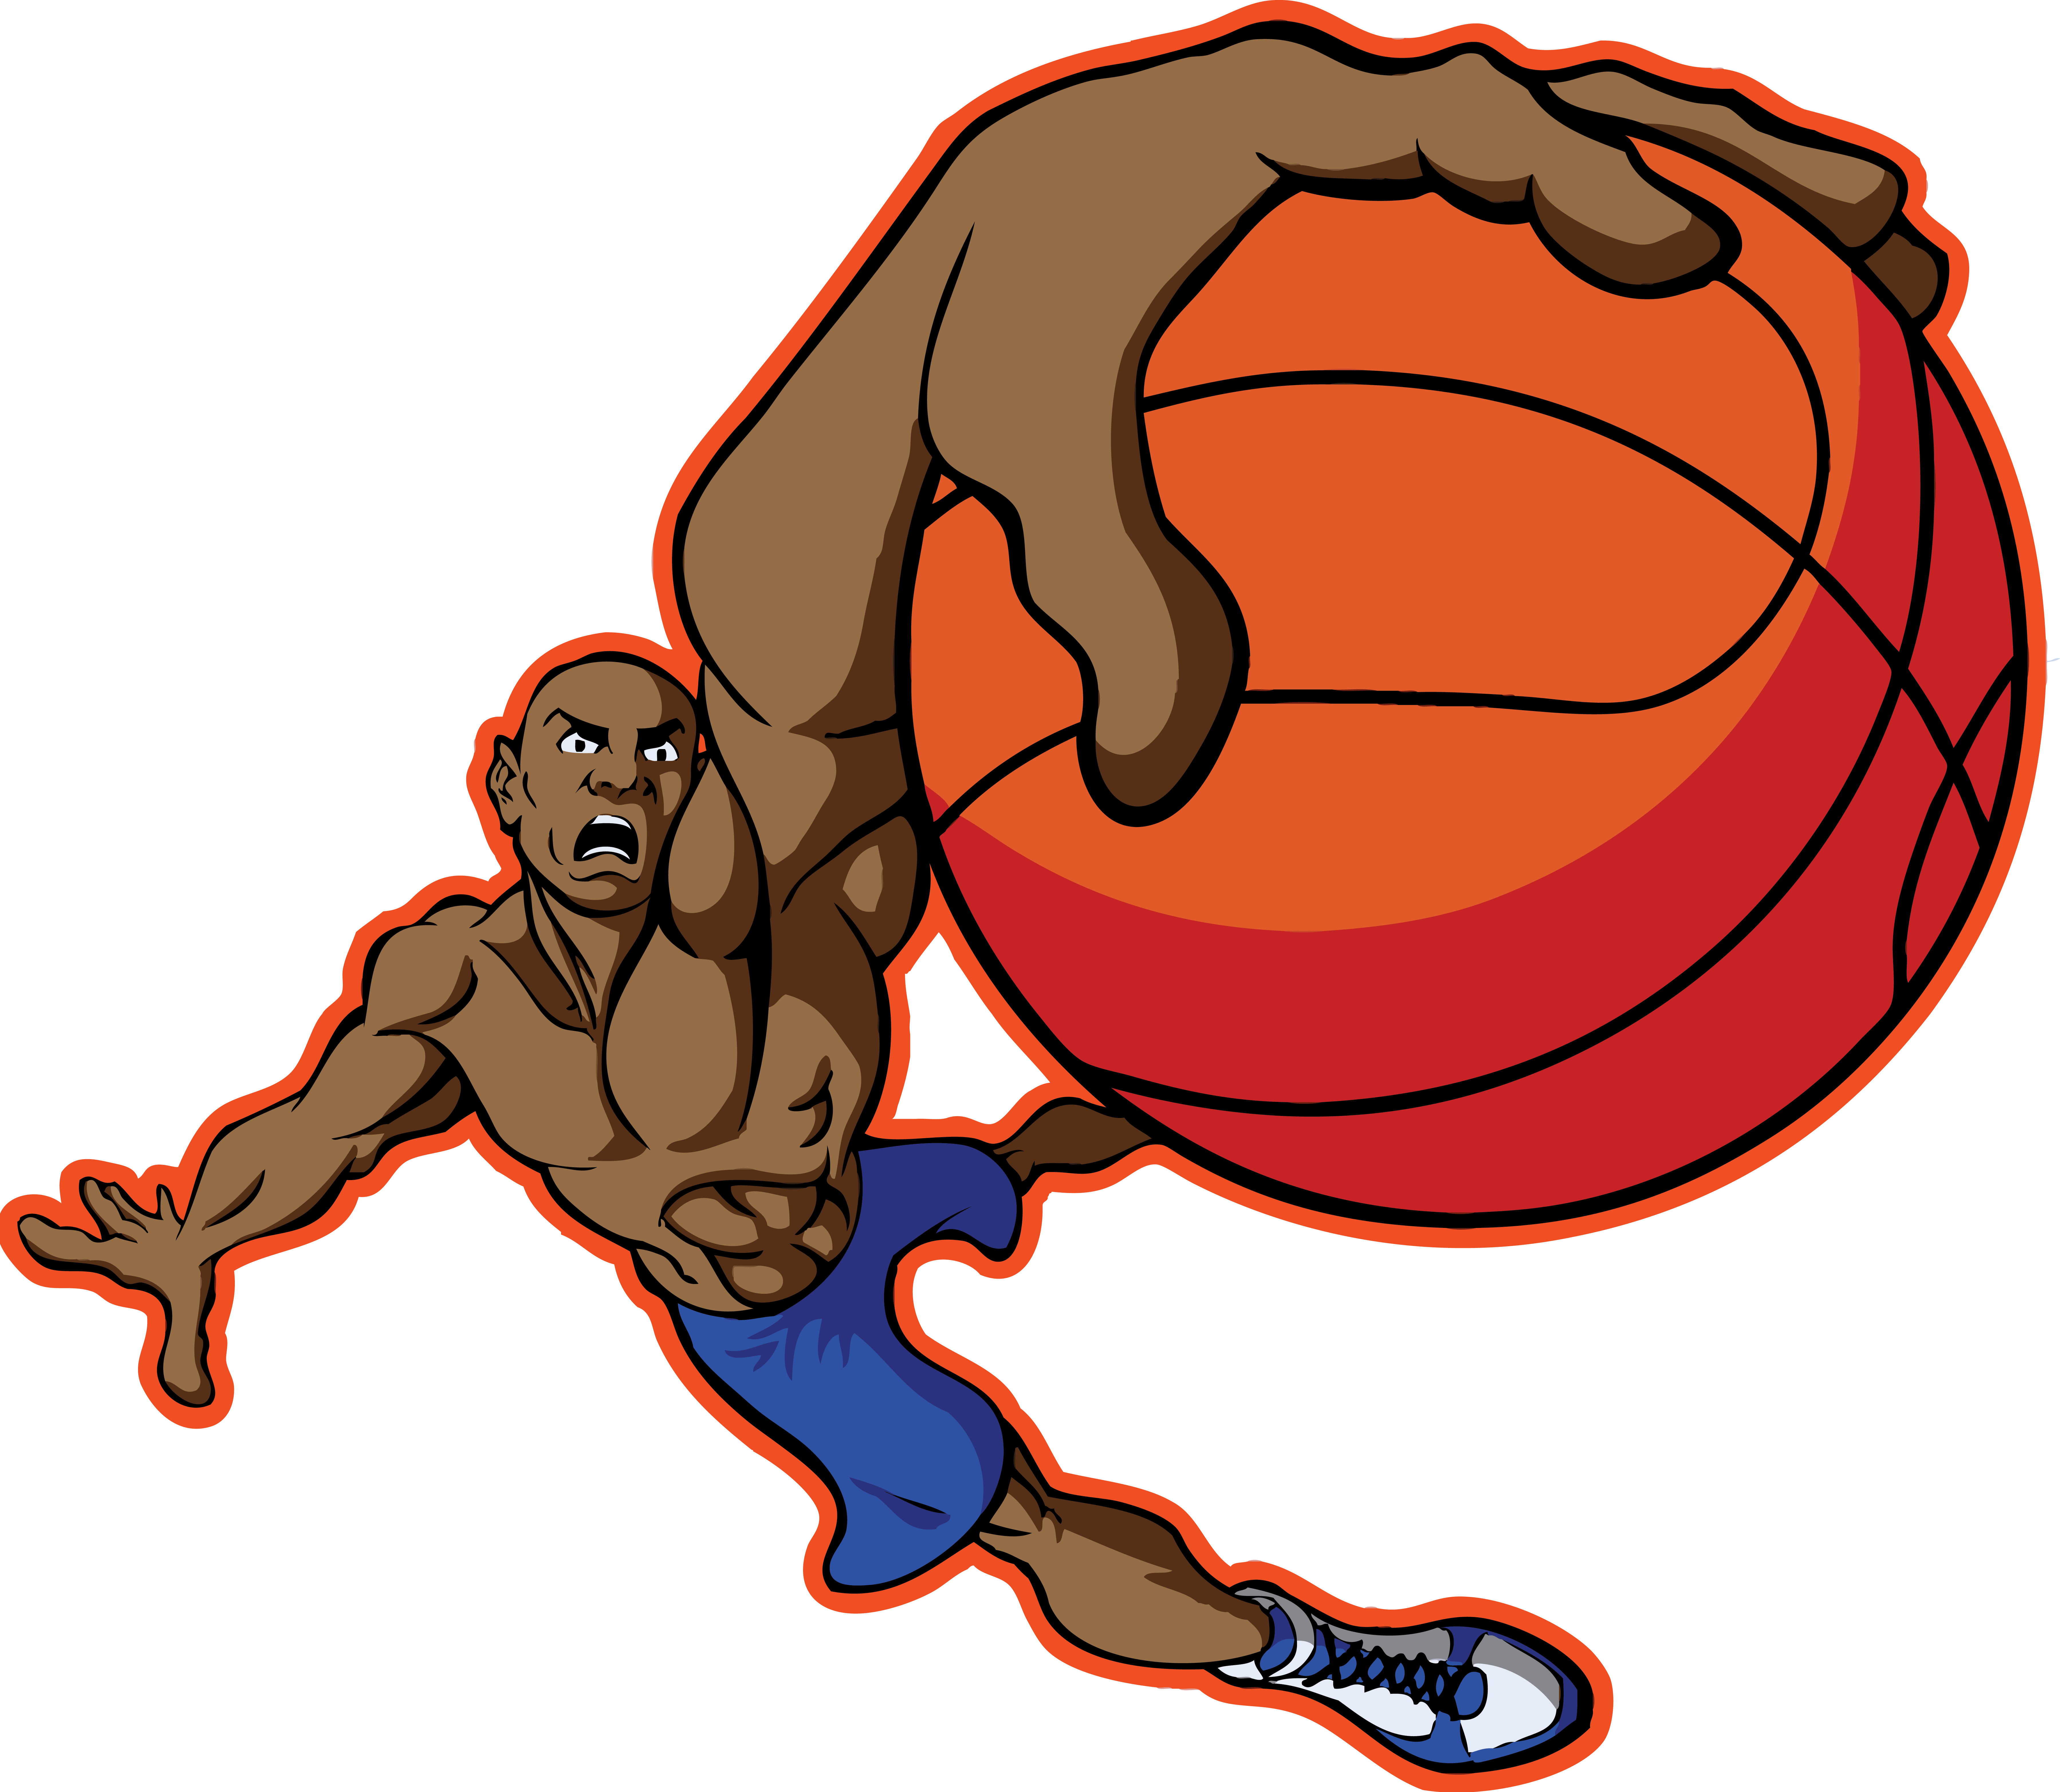 Basketball Images Cartoon - ClipArt Best